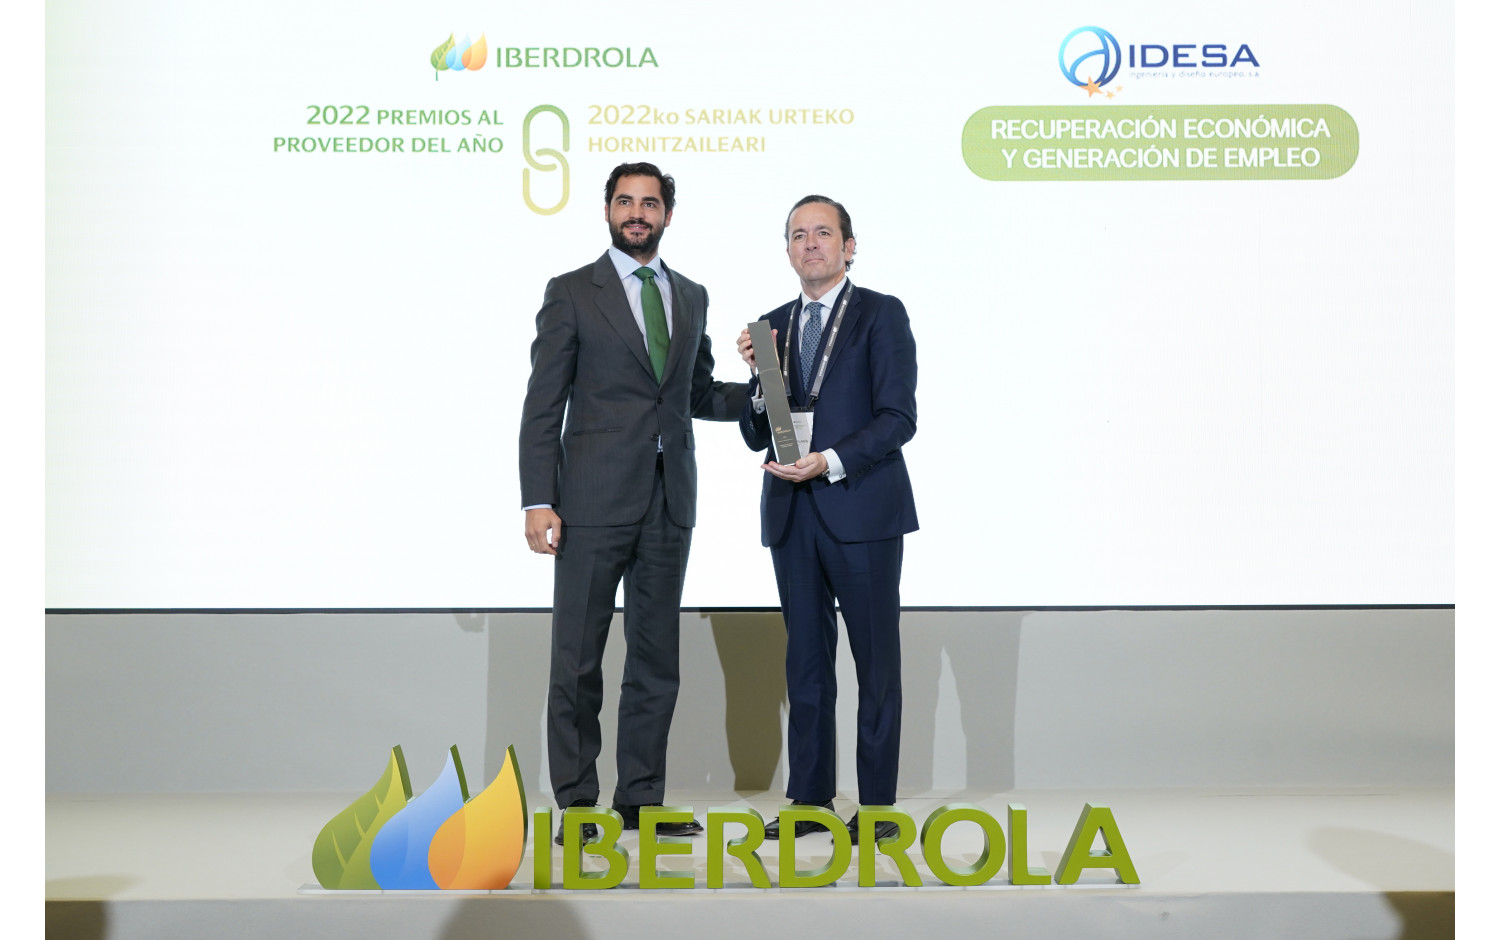 IDESA entre los premiados a los Premios al Proveedor del Año 2022 de Iberdrola. 